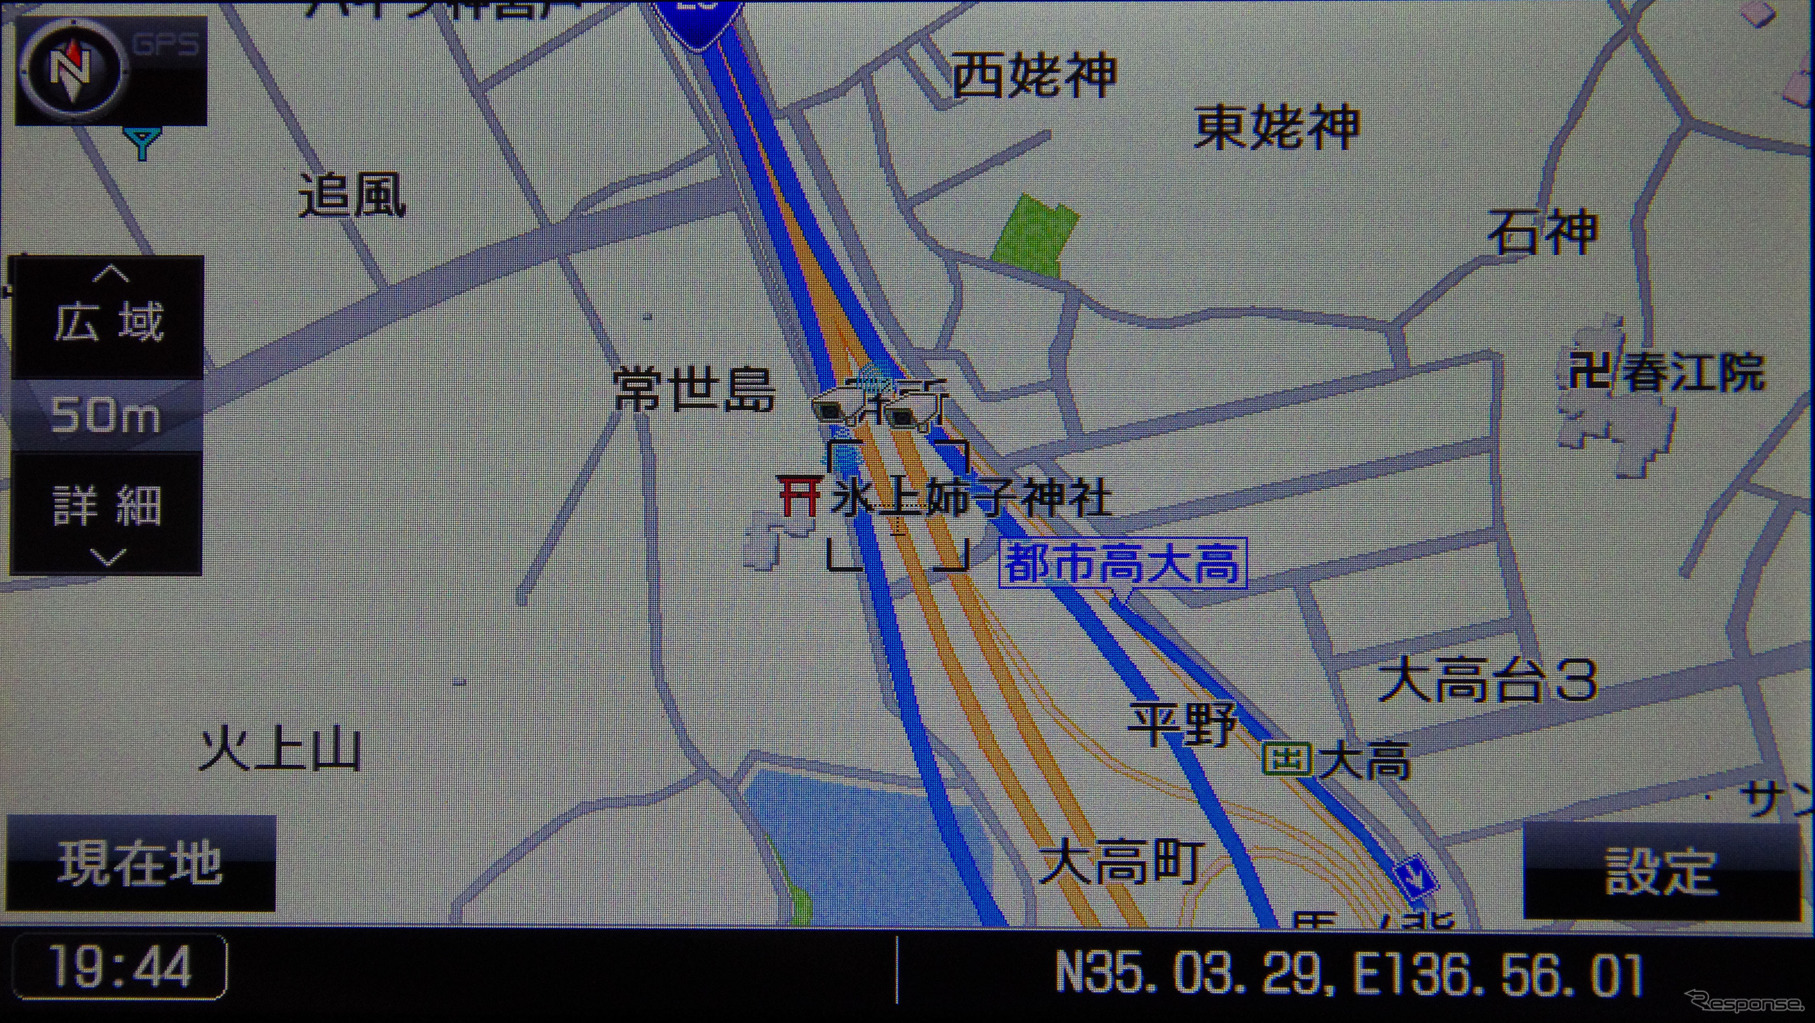 オービスは地図上でカメラのアイコンとして表示される。